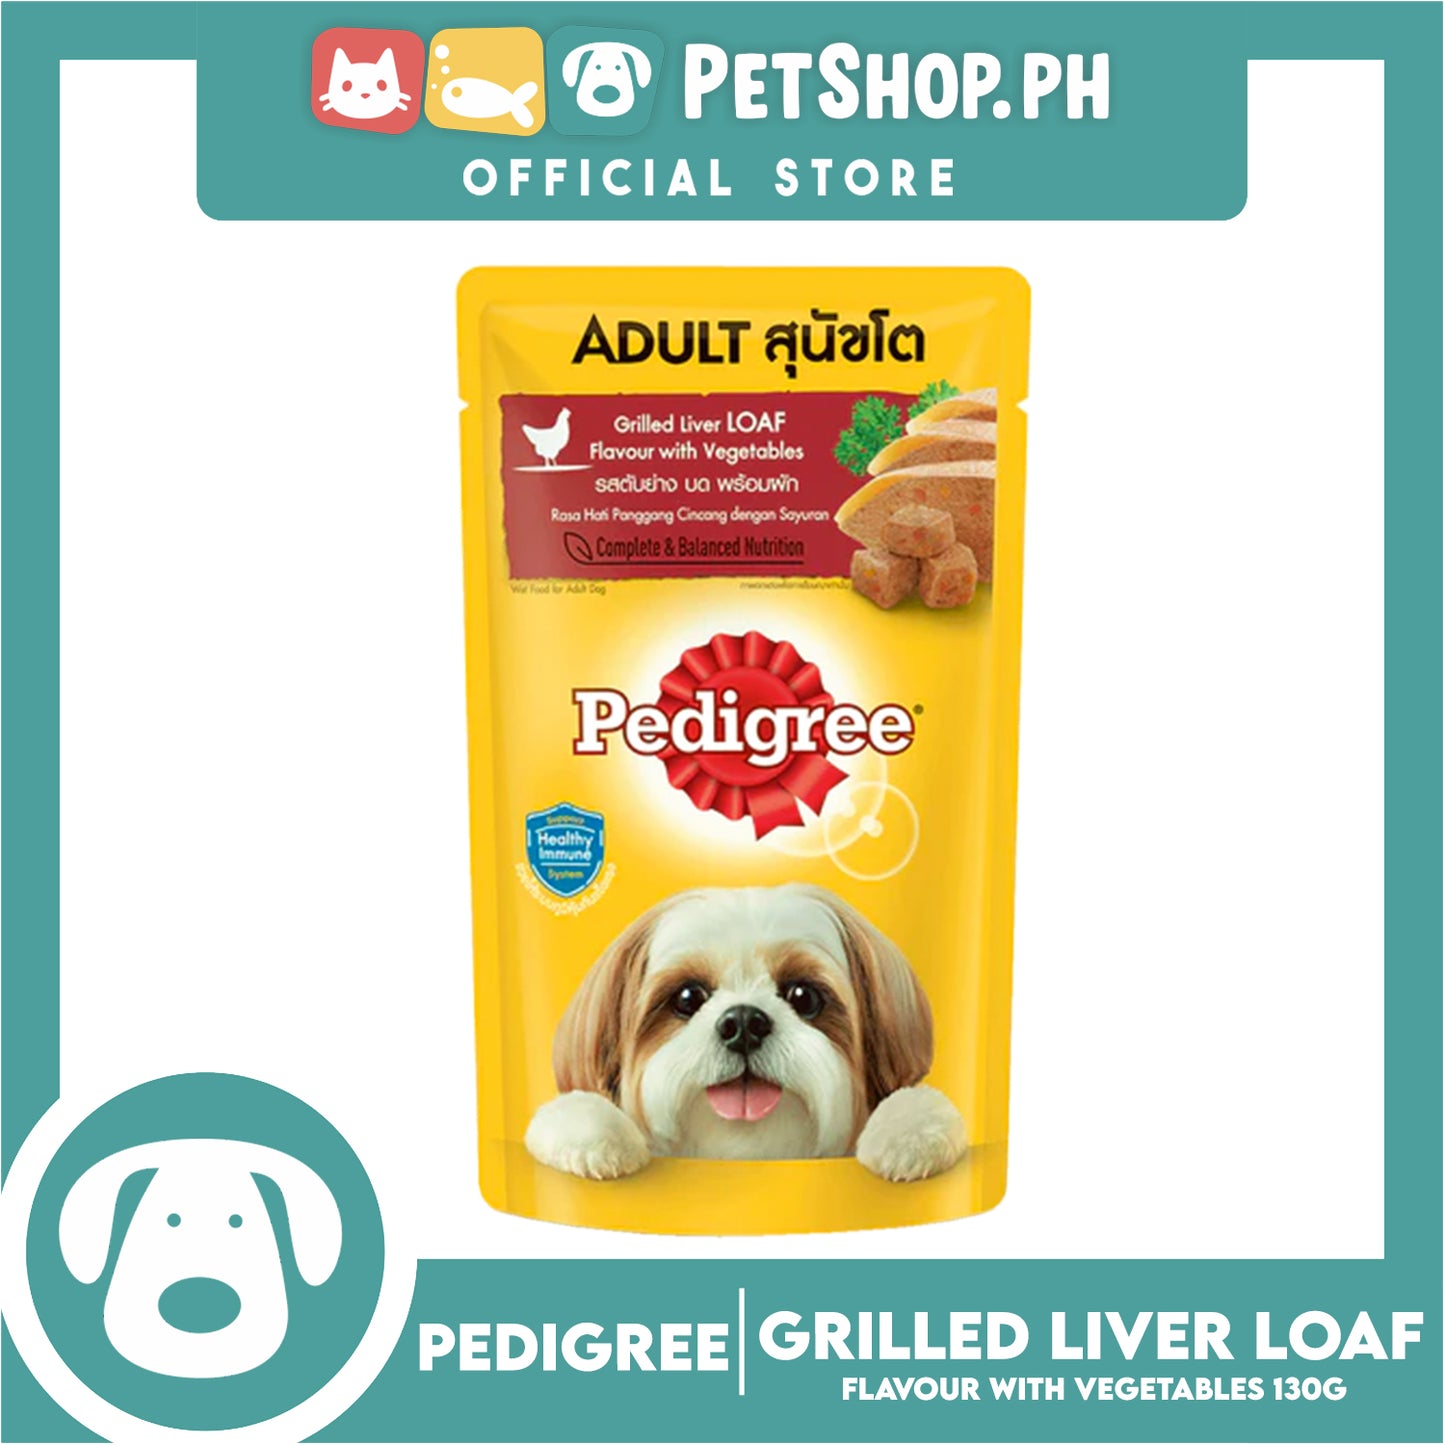 Pedigree Grilled Liver Flavor with Vegetable 130g Dog Food